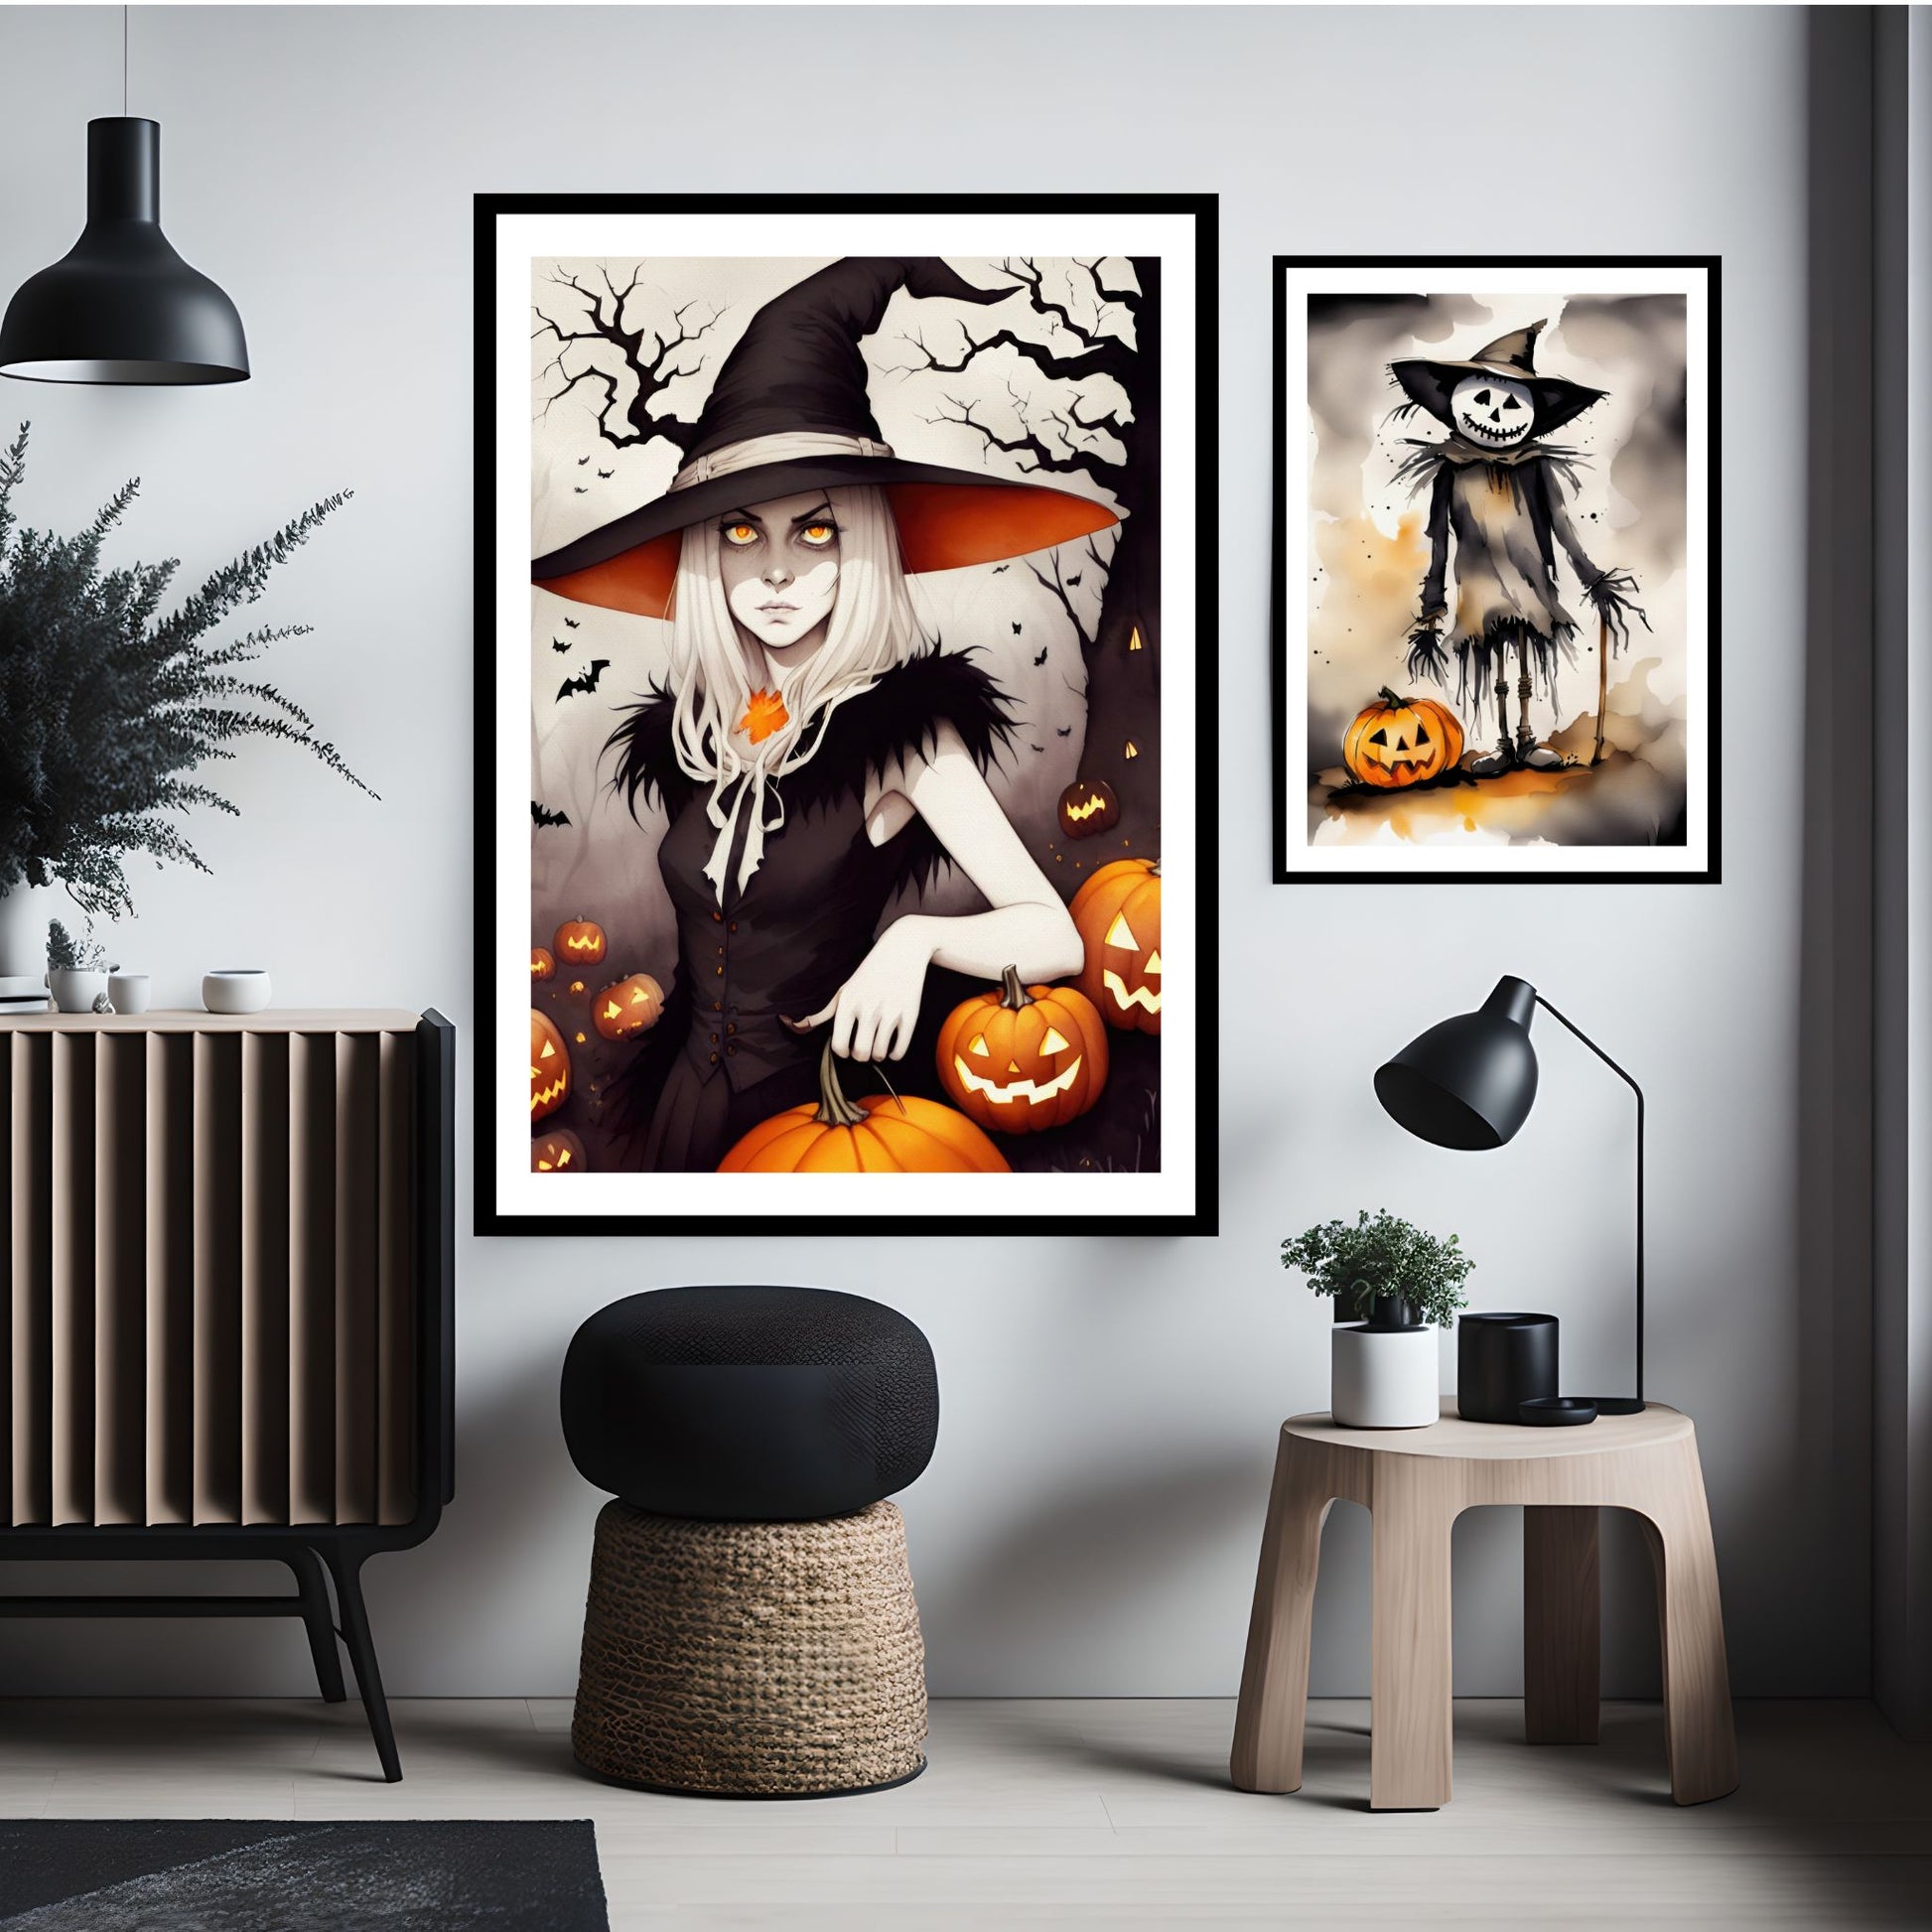 Creepy og kule halloweenplakater av en heks og fugleskremsel